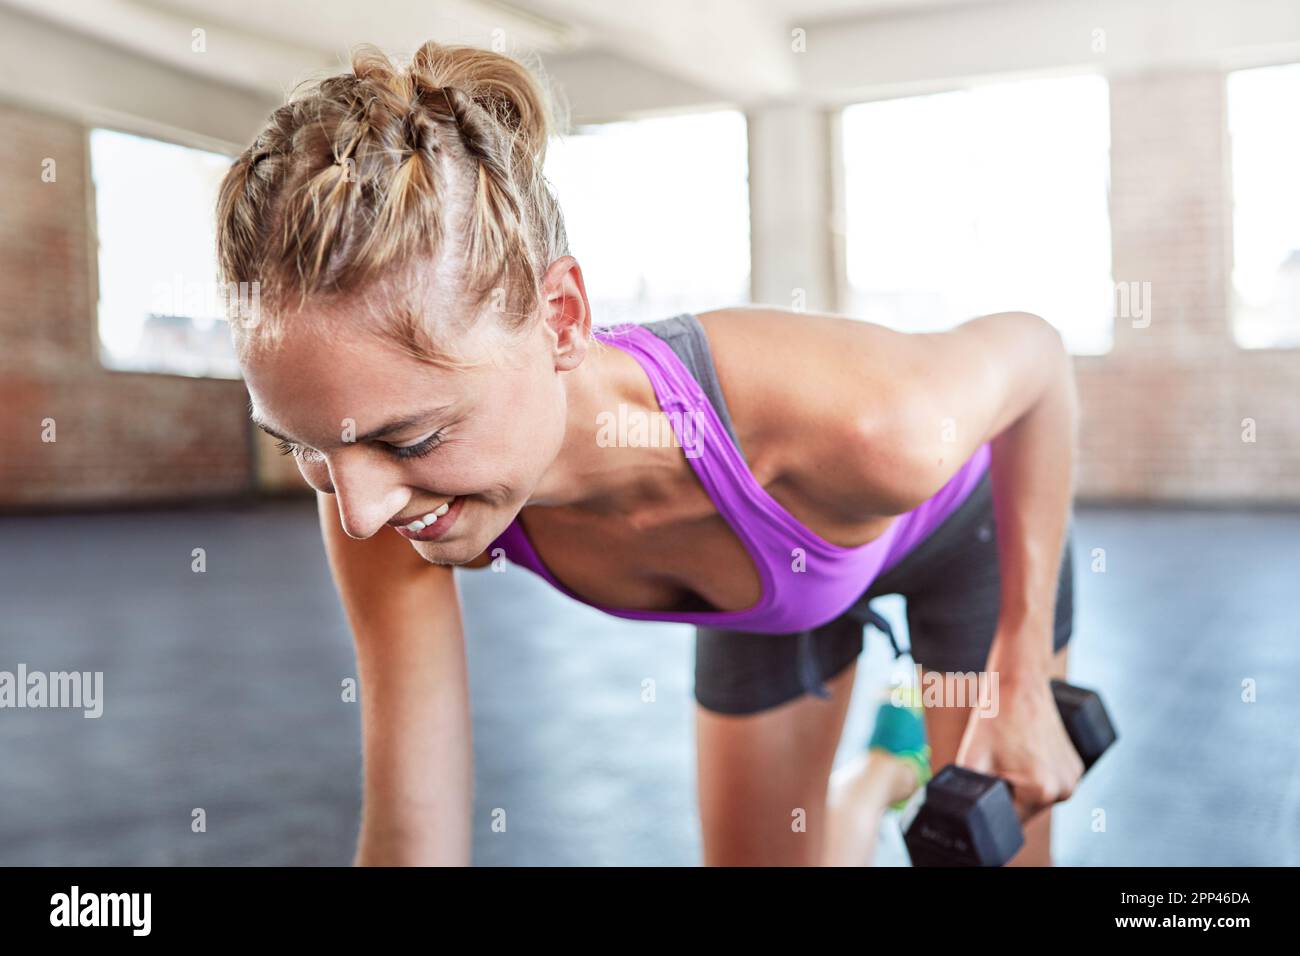 Es gibt keinen Gewinn ohne Schmerzen. Eine junge Frau, die im Fitnessstudio mit Gewichten trainiert. Stockfoto